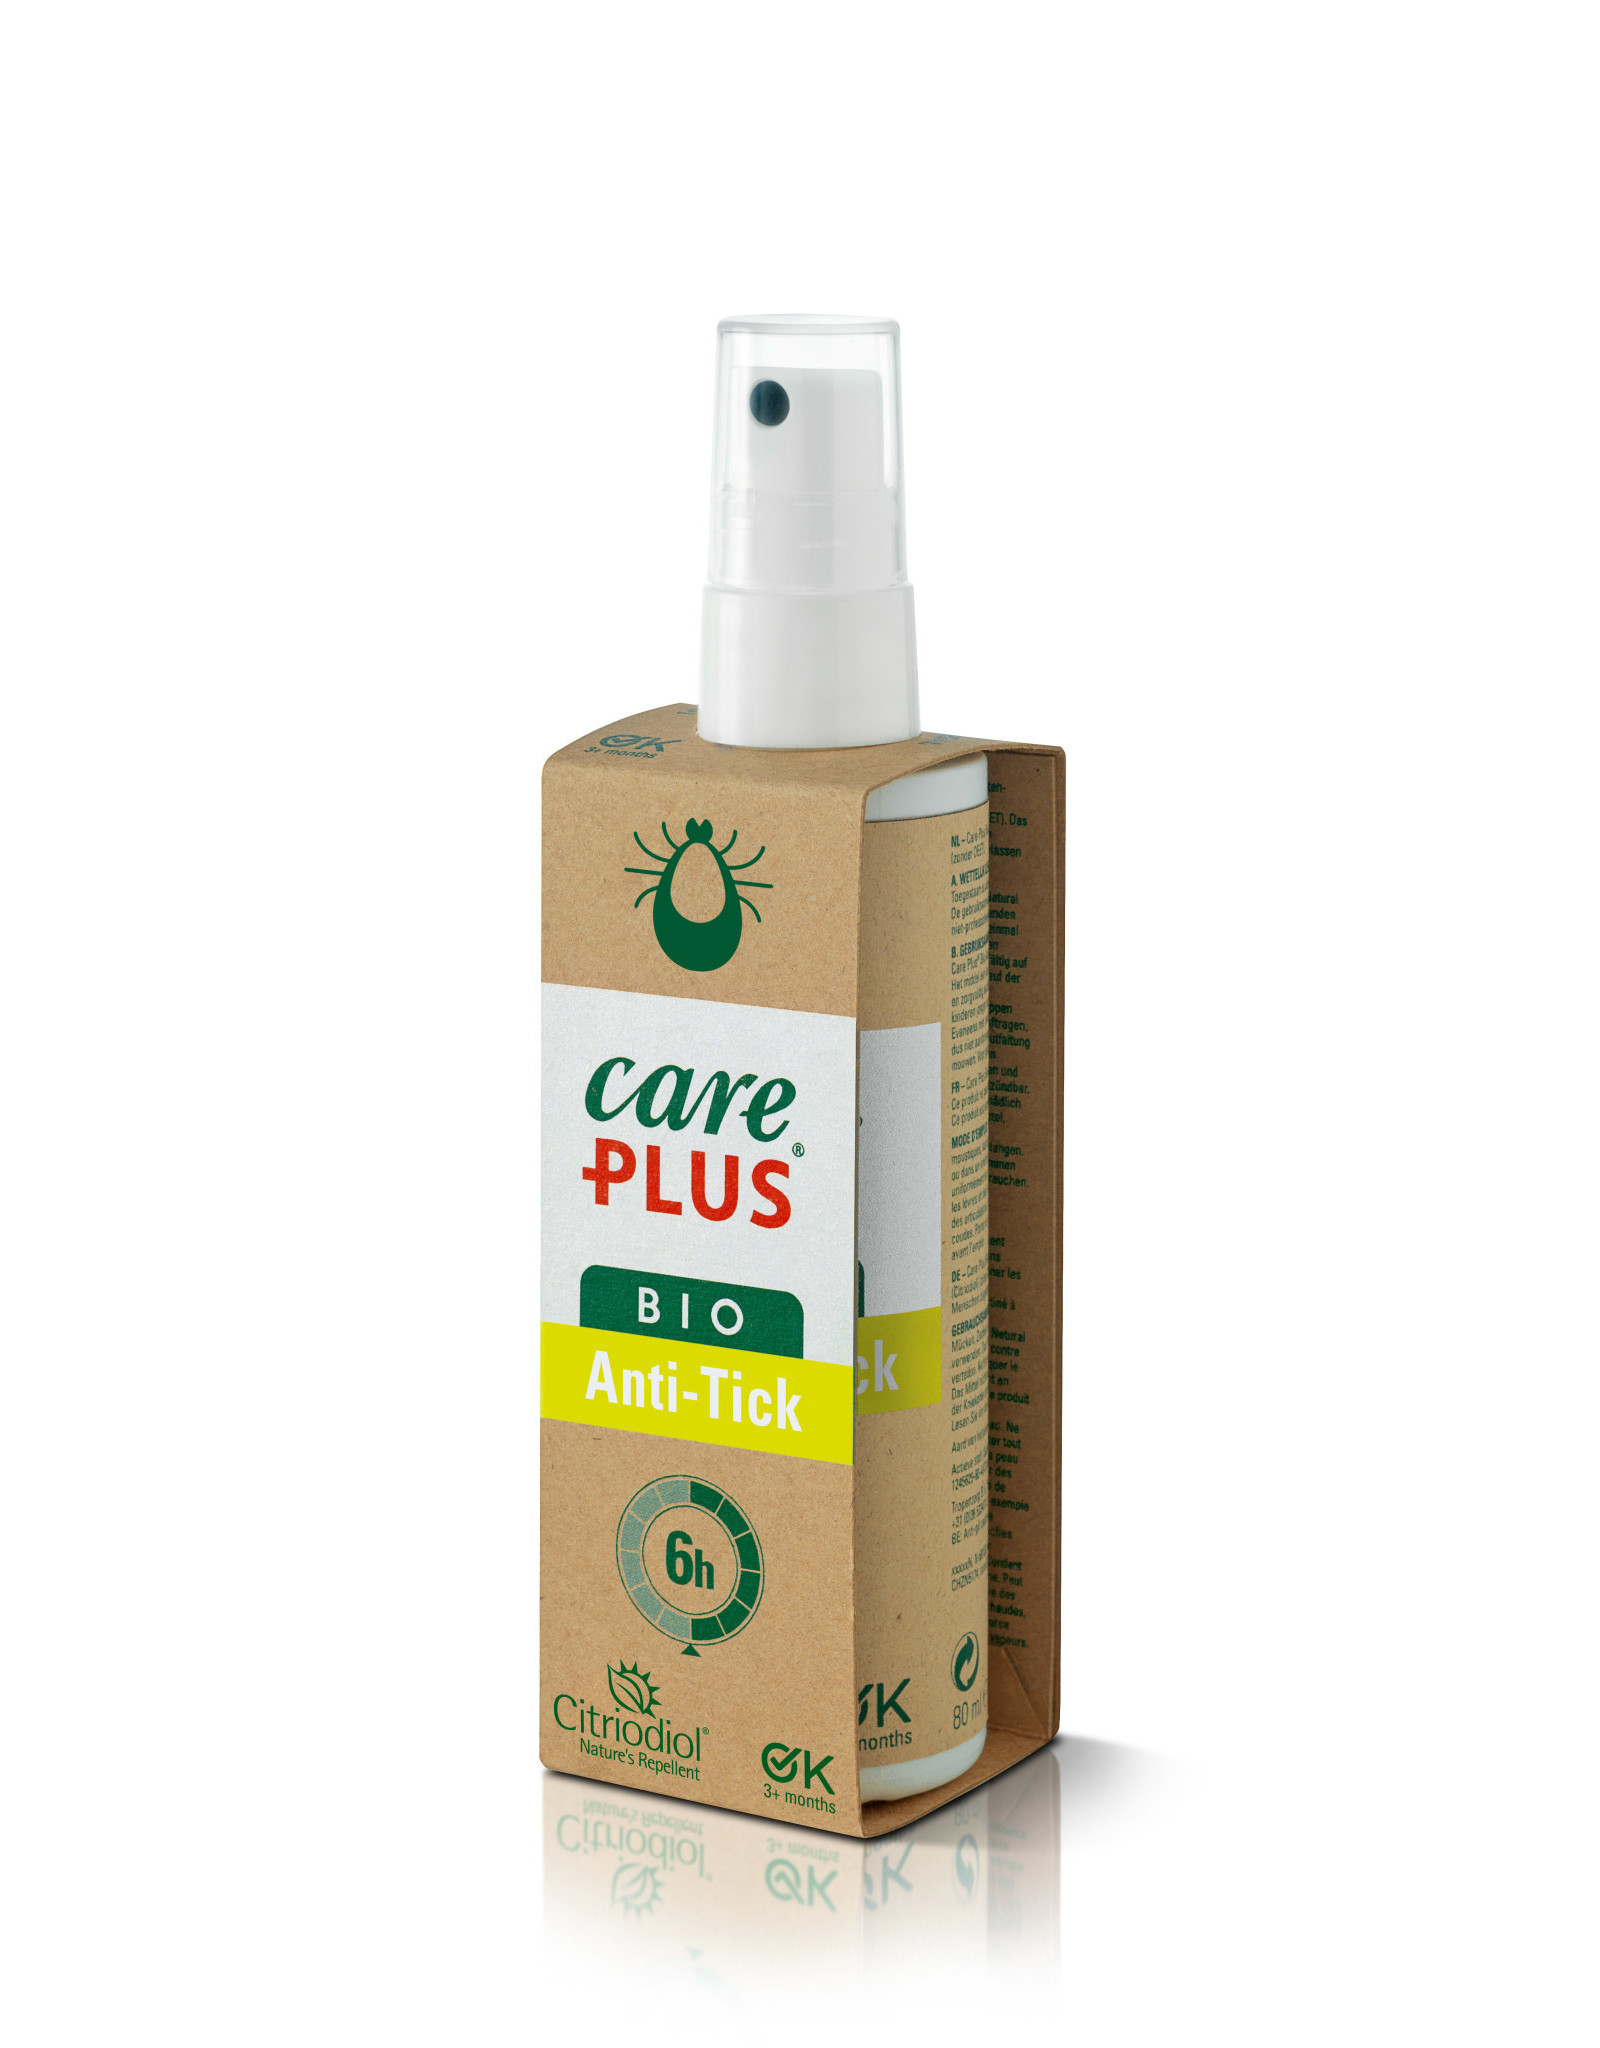 careplus Care Plus® Bio Anti-Tick Spray - 6h protection - 80ml